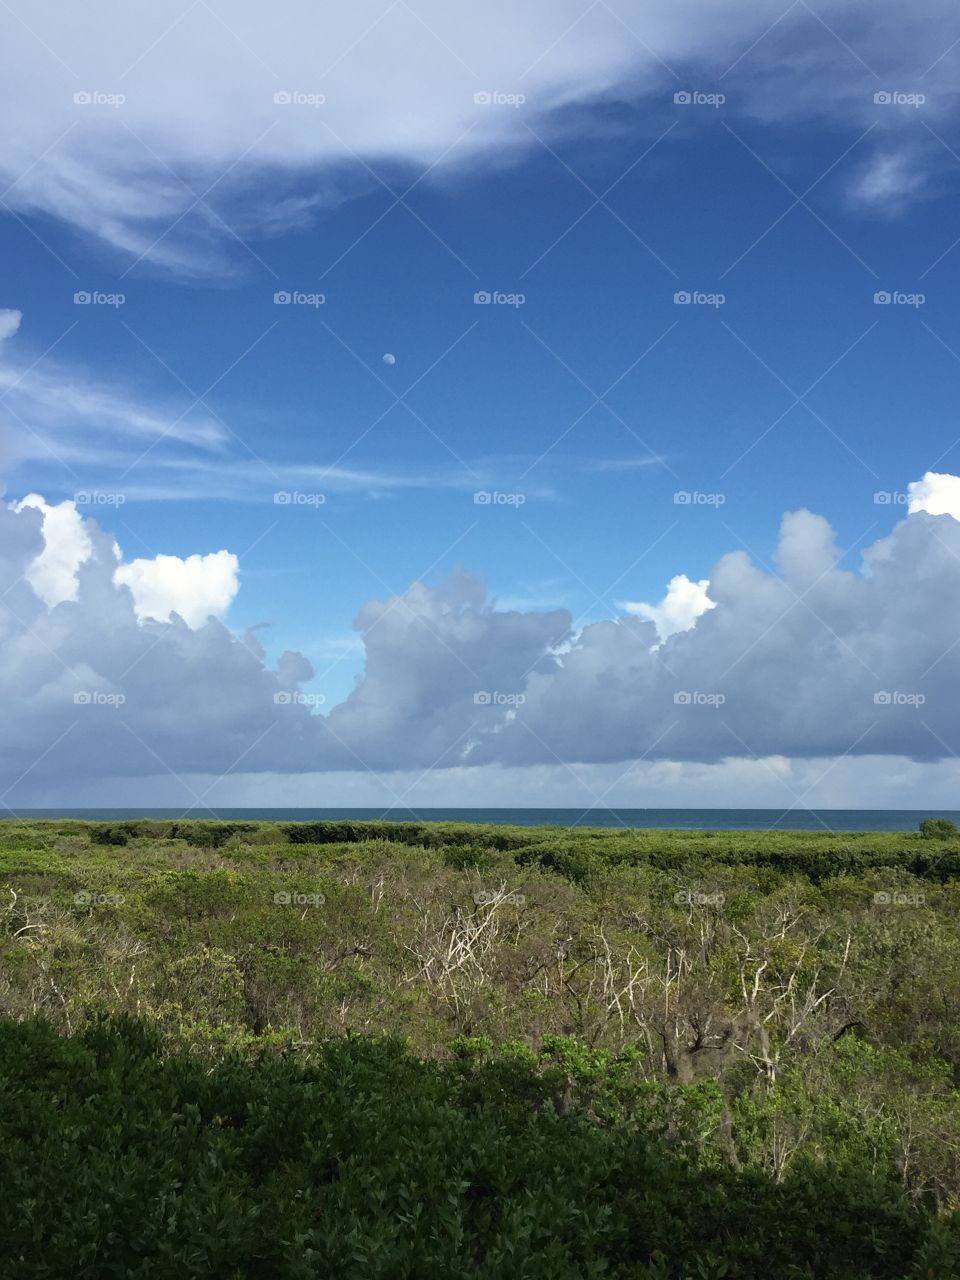 Florida grass sea blue sky